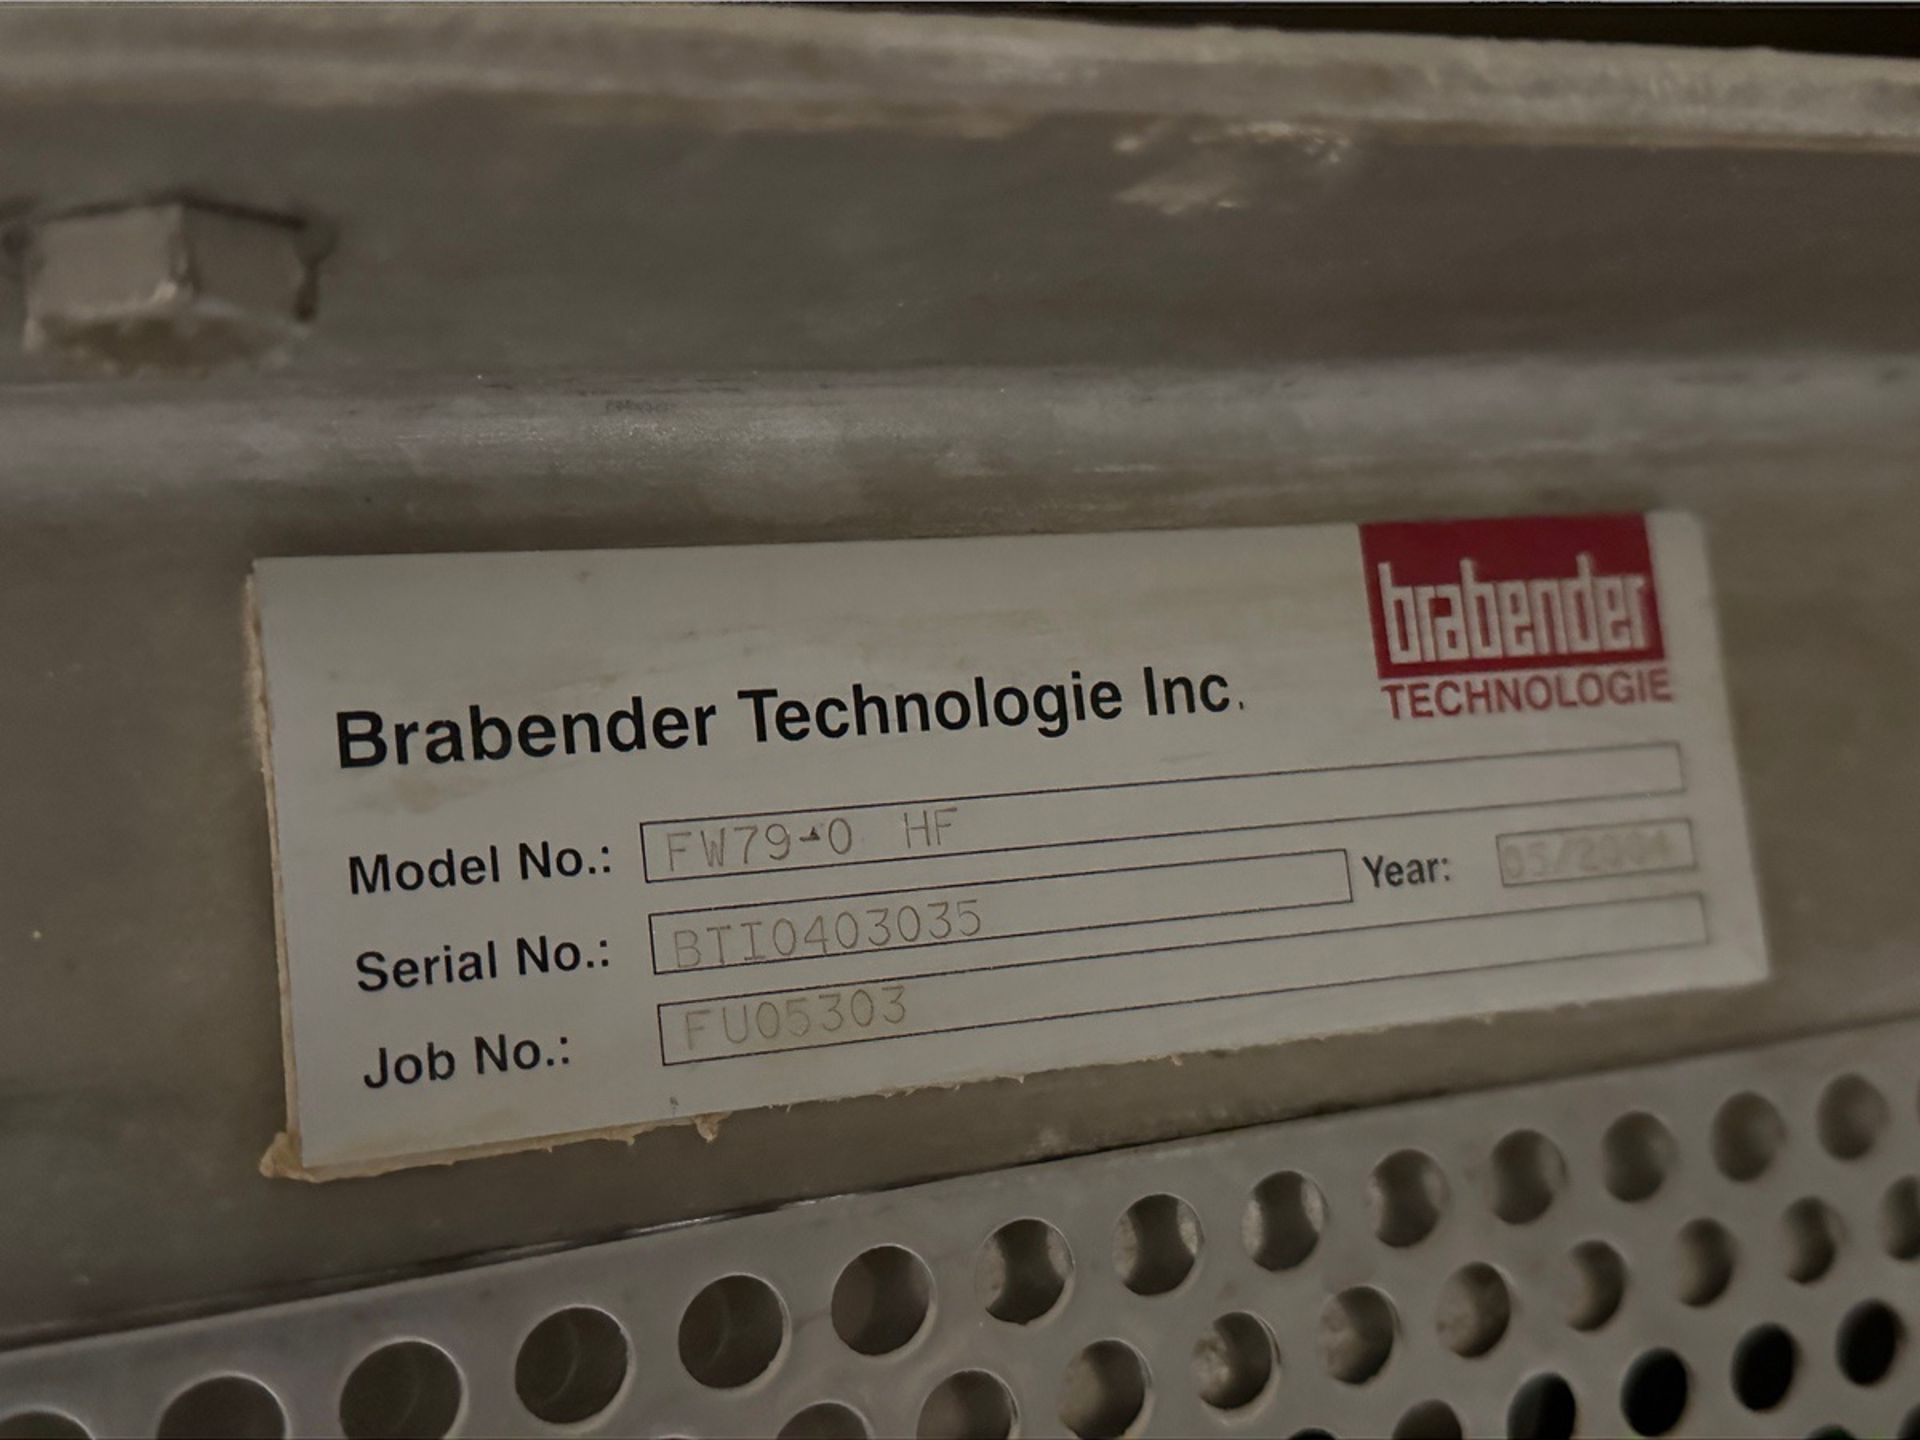 Brabender Stainless Steel Ingredient Hopper - Model FW79-0 HF, S/N BT10403035 - Image 5 of 5